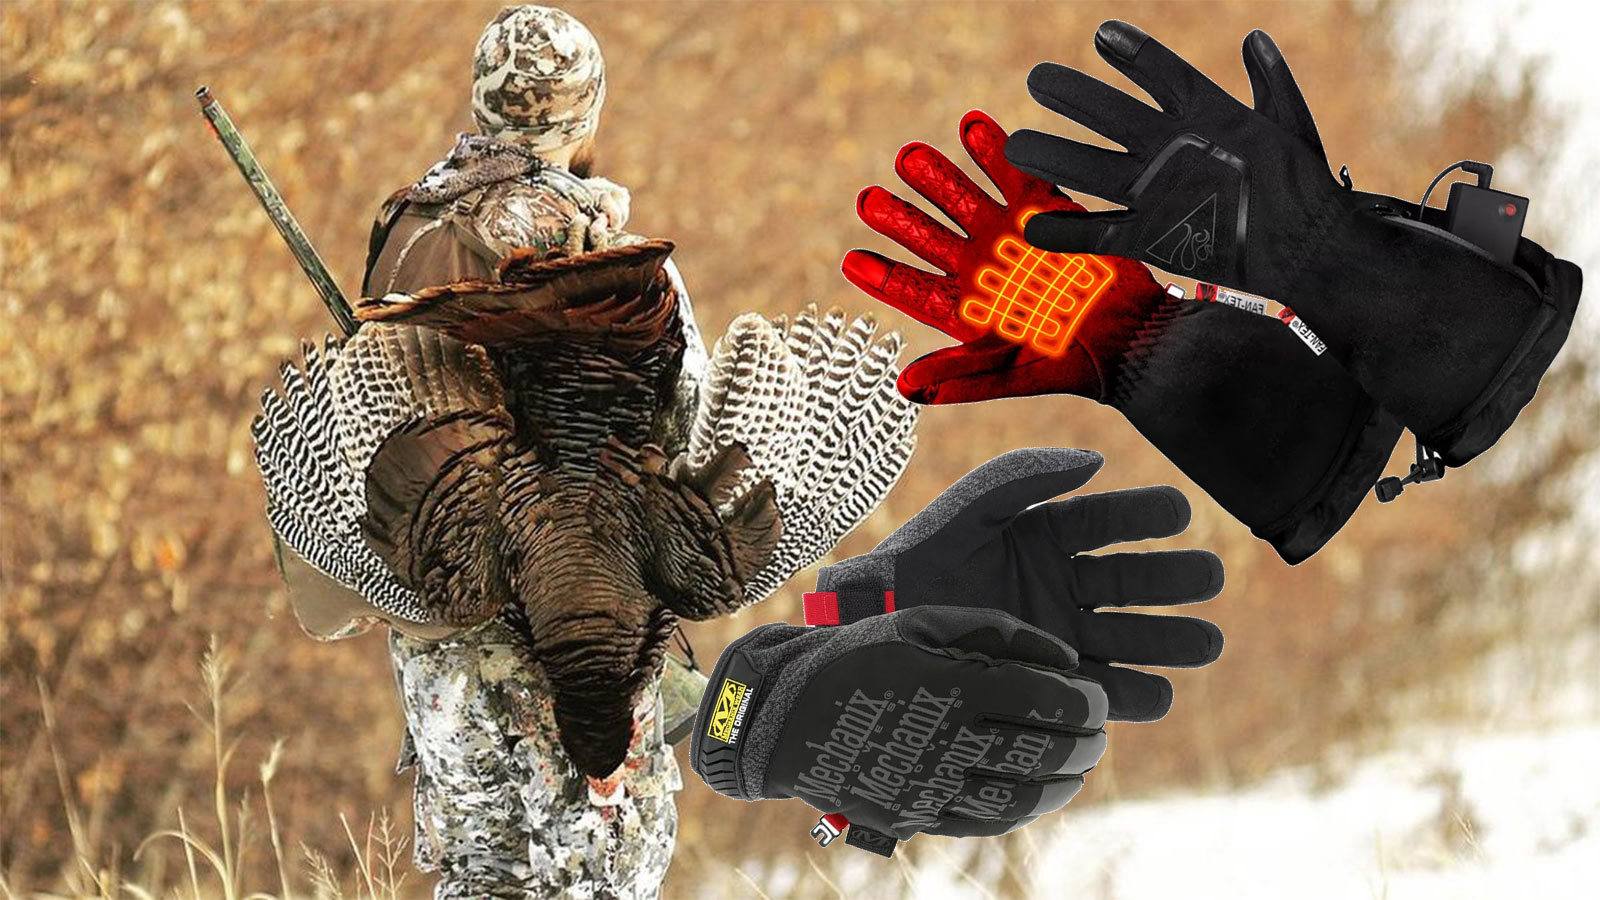 Seirus 1626 Heatwave Plus Daze Cold Weather Winter Mens Gloves